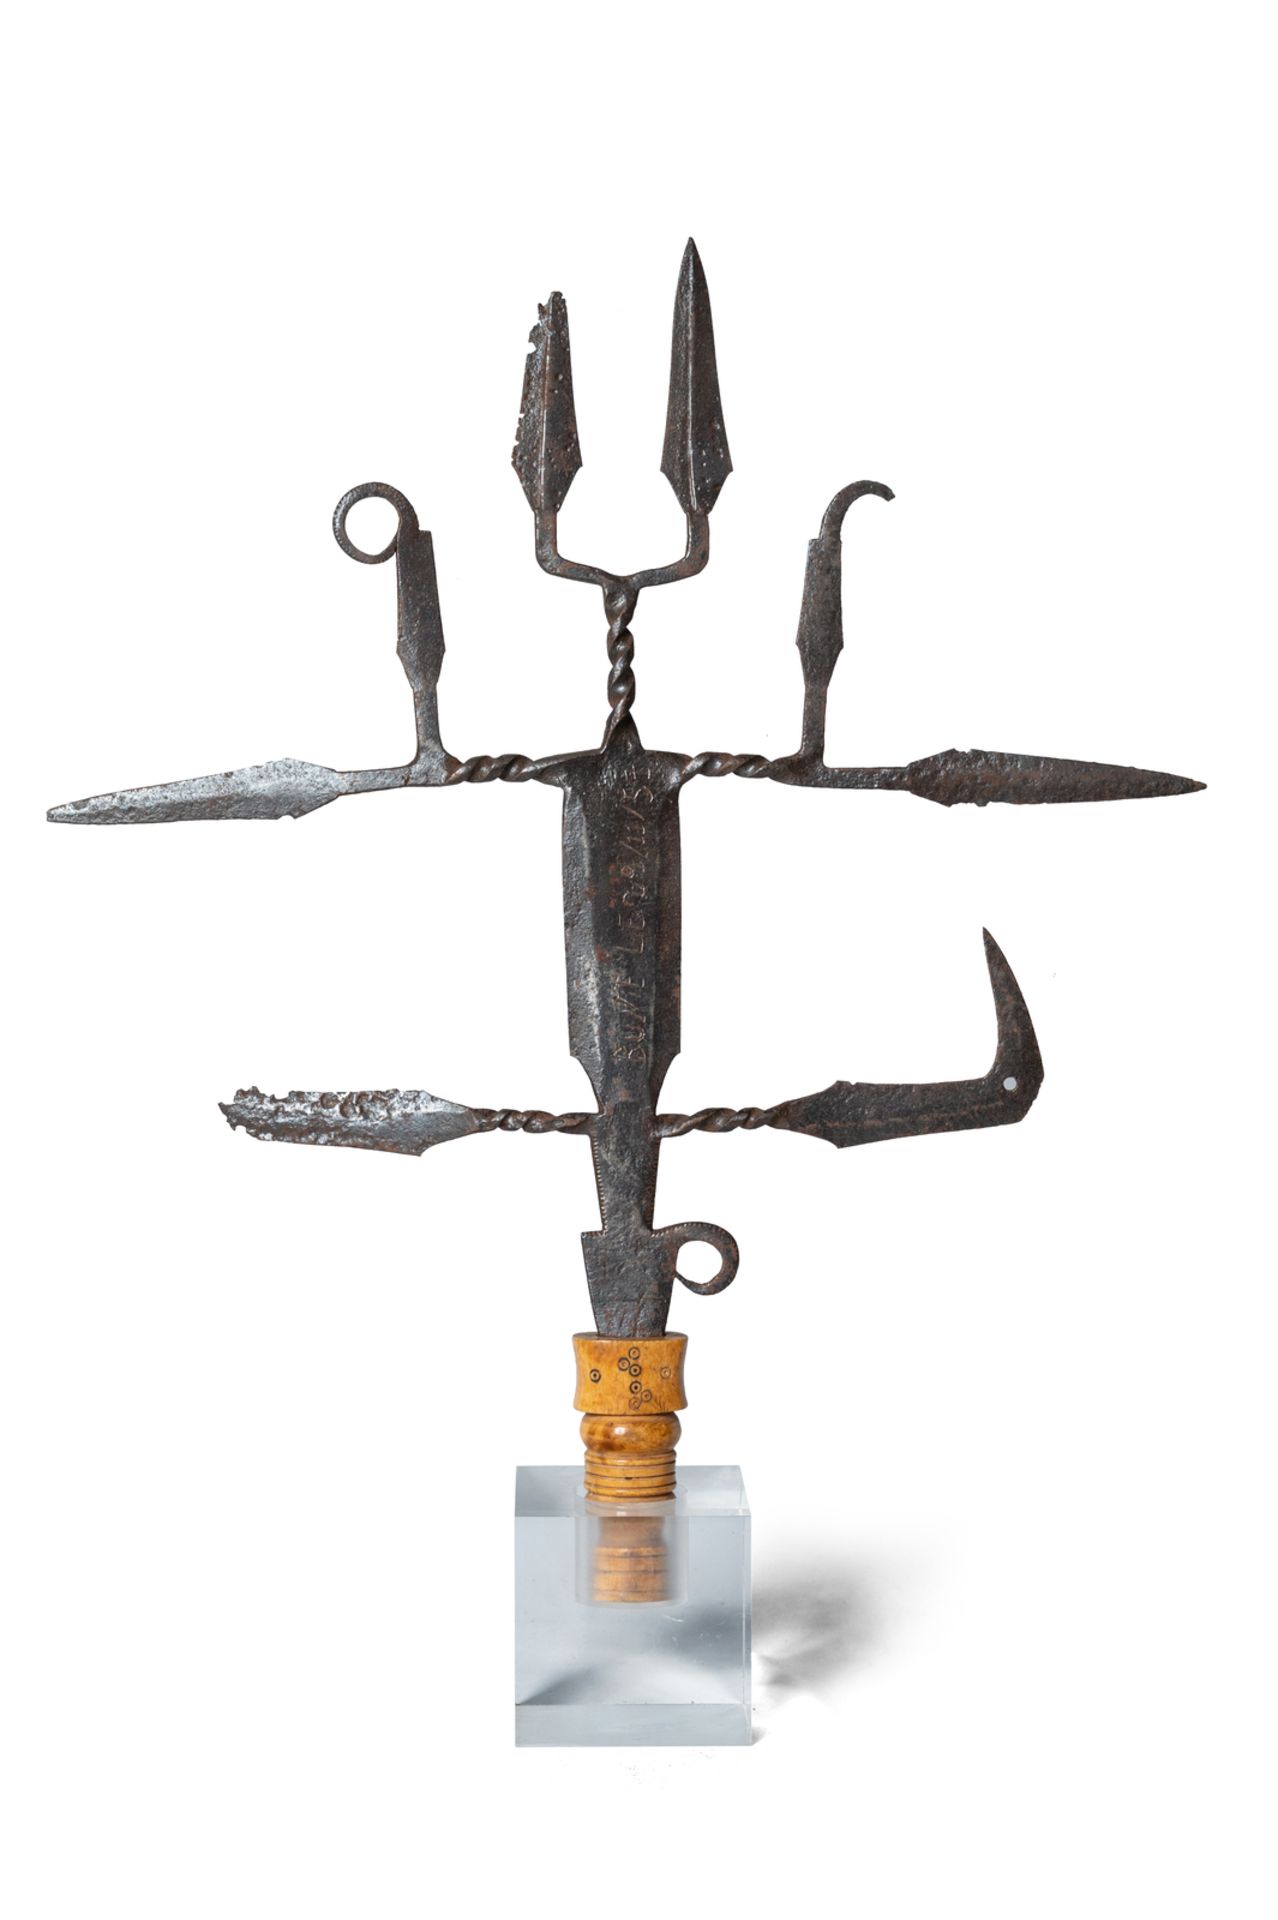 Mangbetu ceremonial knife. Democratic Republic of Congo, 19th century.